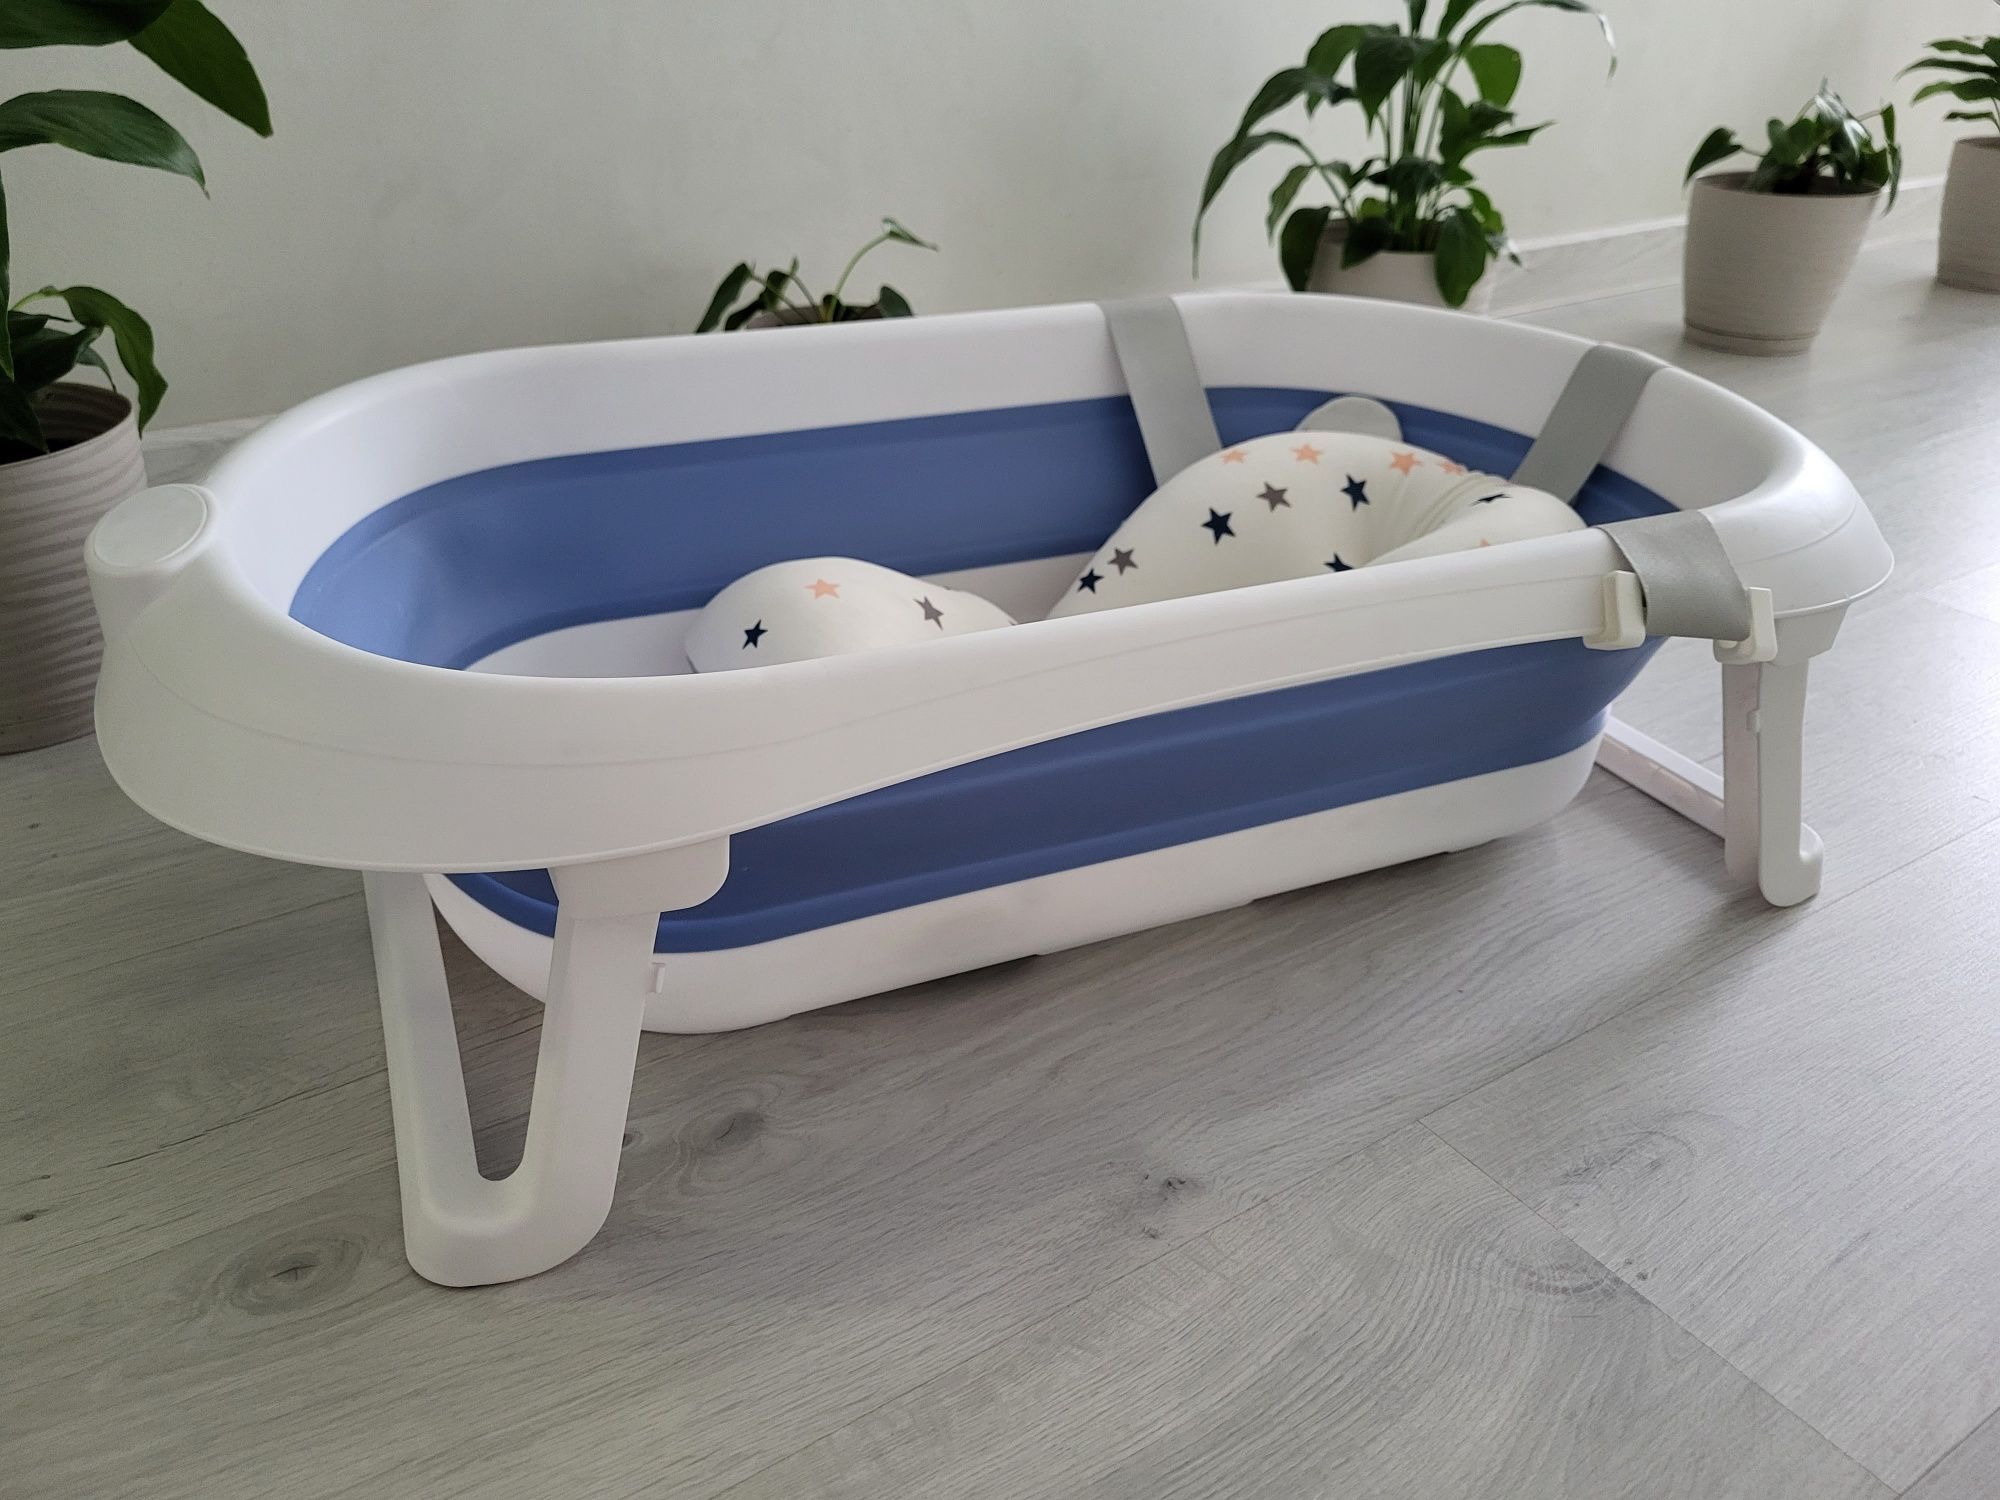 Складной ванна для малыша